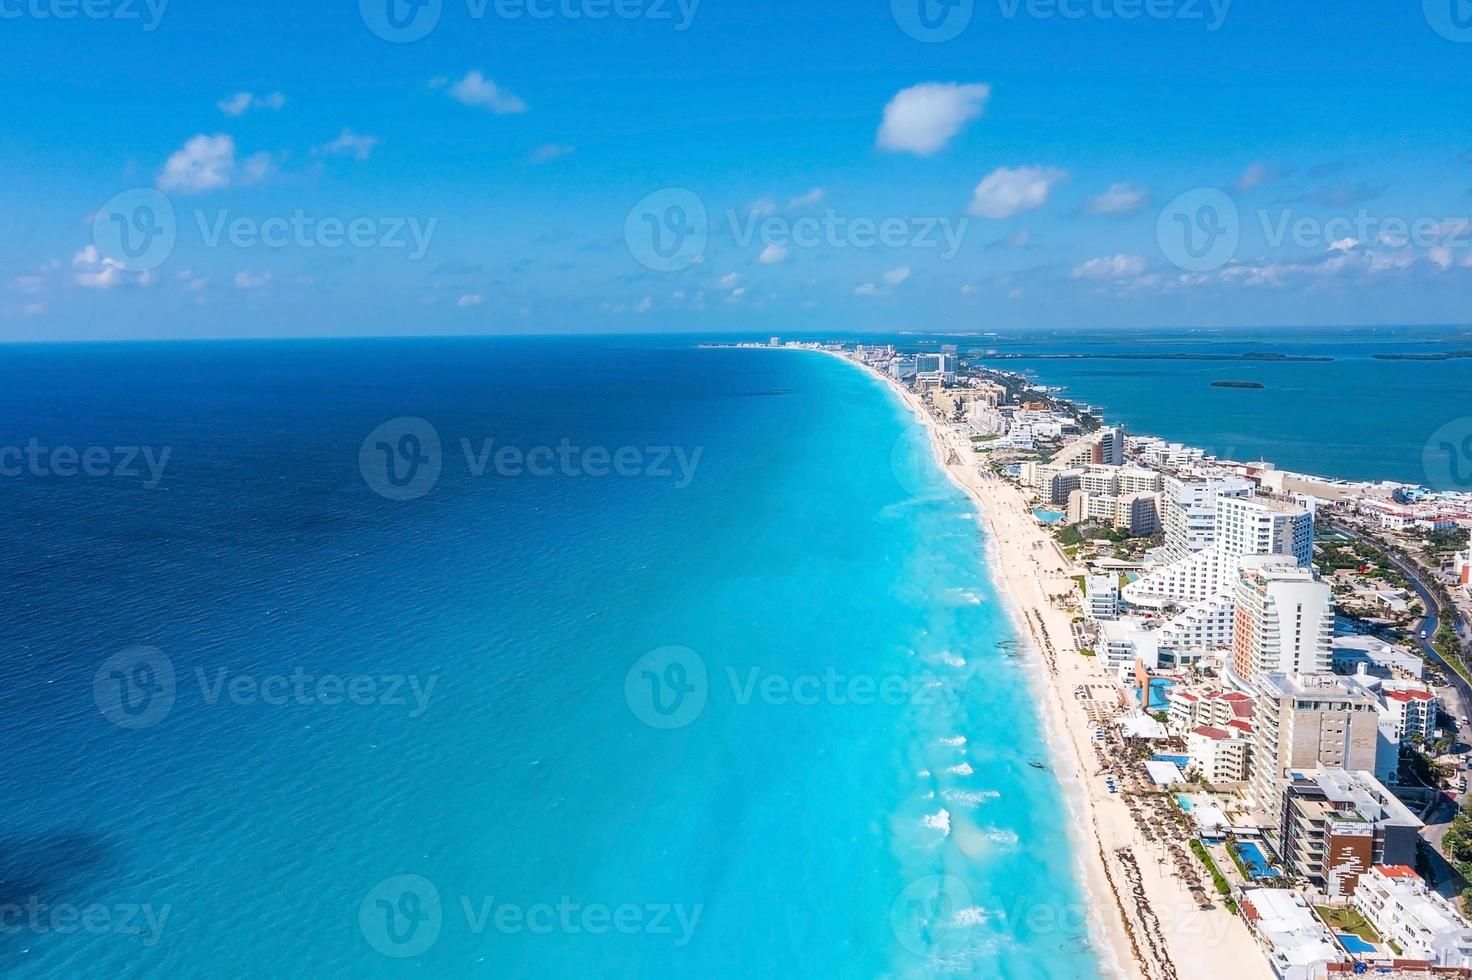 fotos aéreas de hoteles y resorts de lujo que rodean las playas